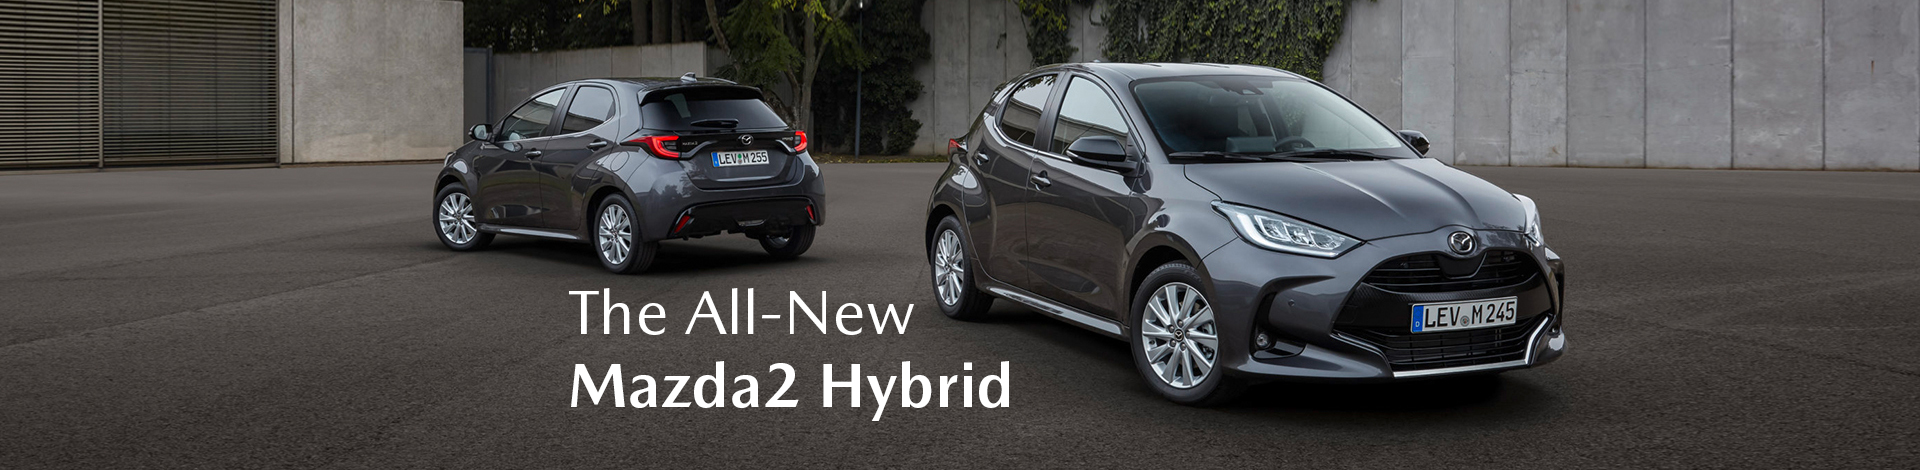 All New Mazda2 Hybrid Banner